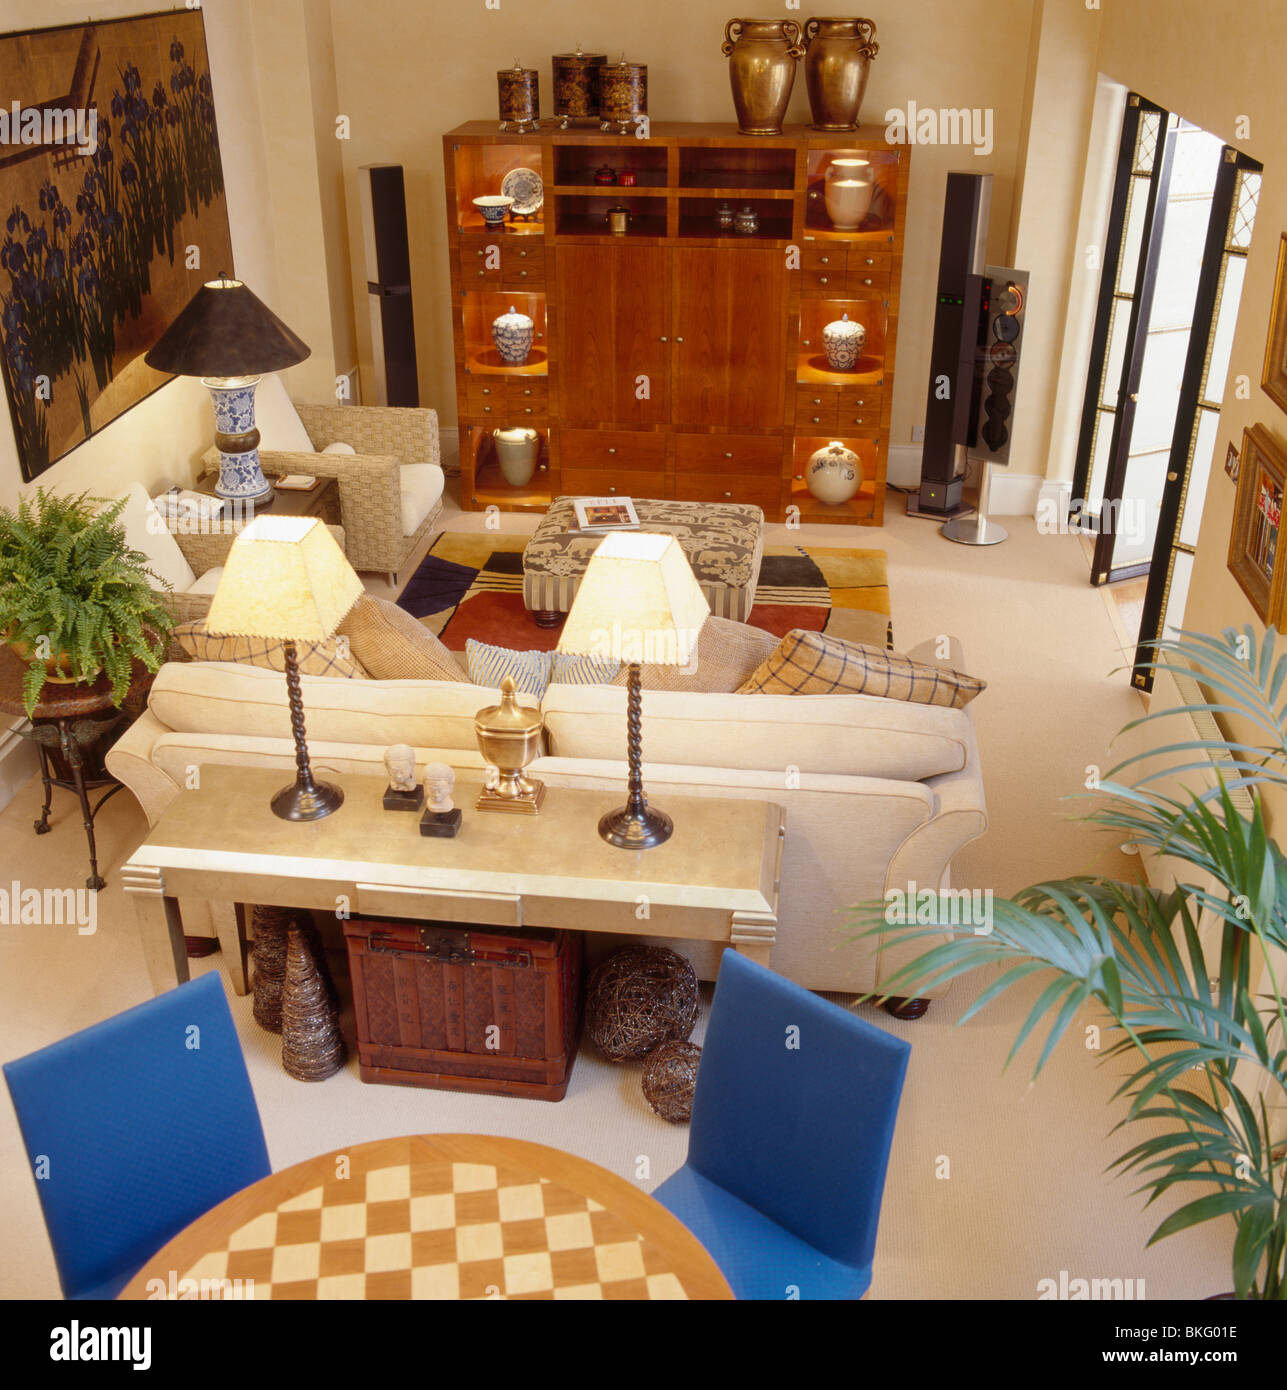 Birdseye Blick auf Appartement Wohn- / Esszimmer mit Creme Lampen auf  Konsole Tisch hinter Creme sofa Stockfotografie - Alamy